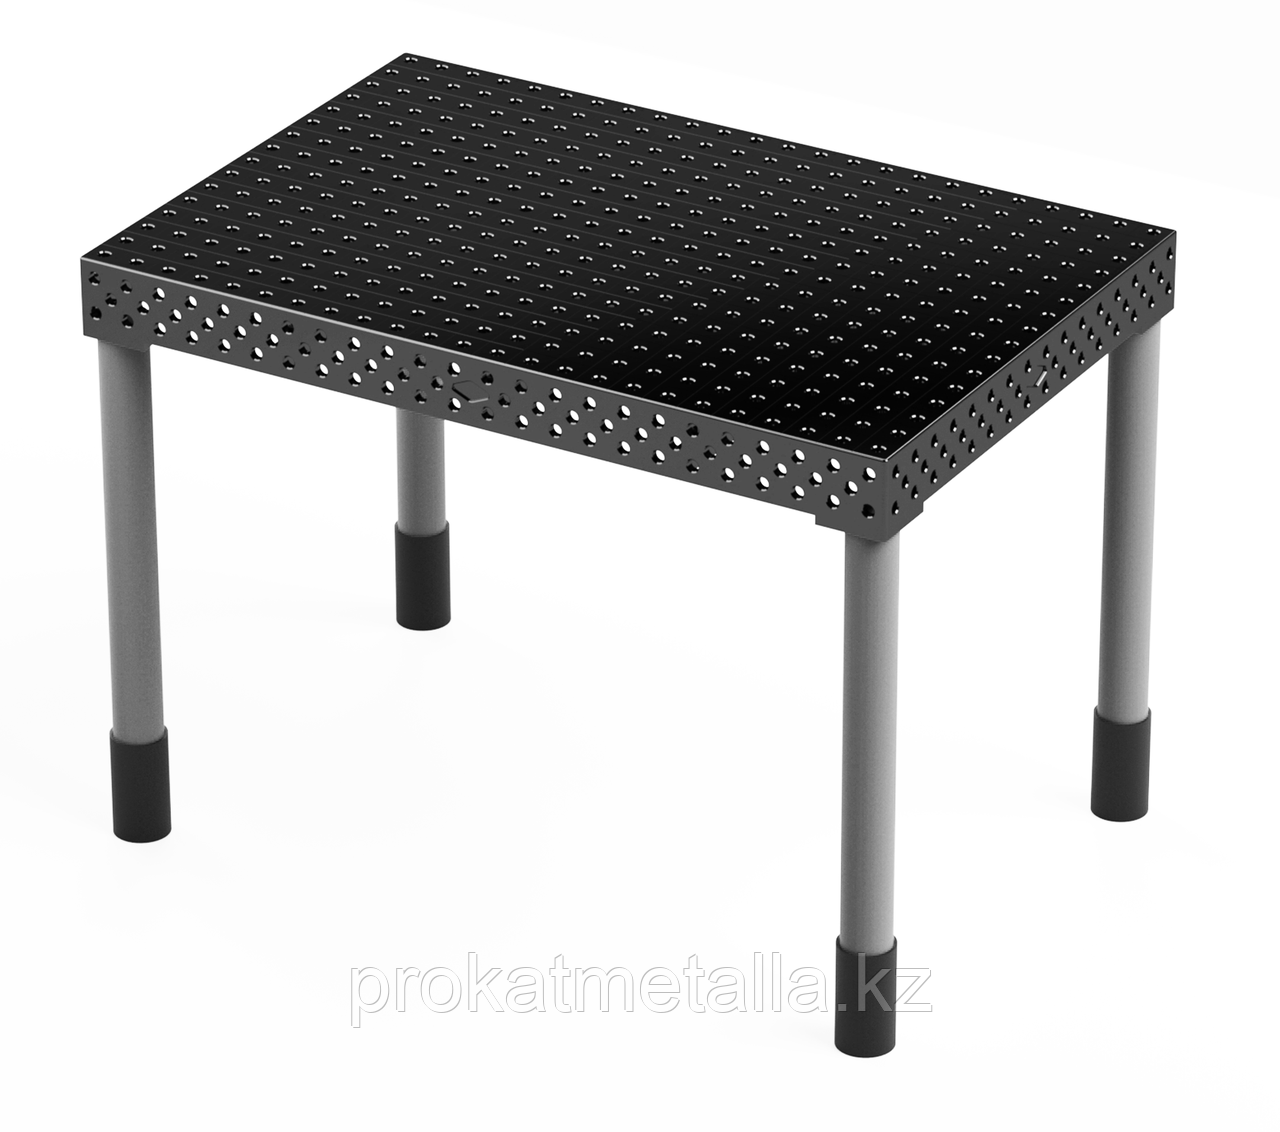 Сварочный стол "Лайт" 2950х1450х150 (шаг 50 мм)